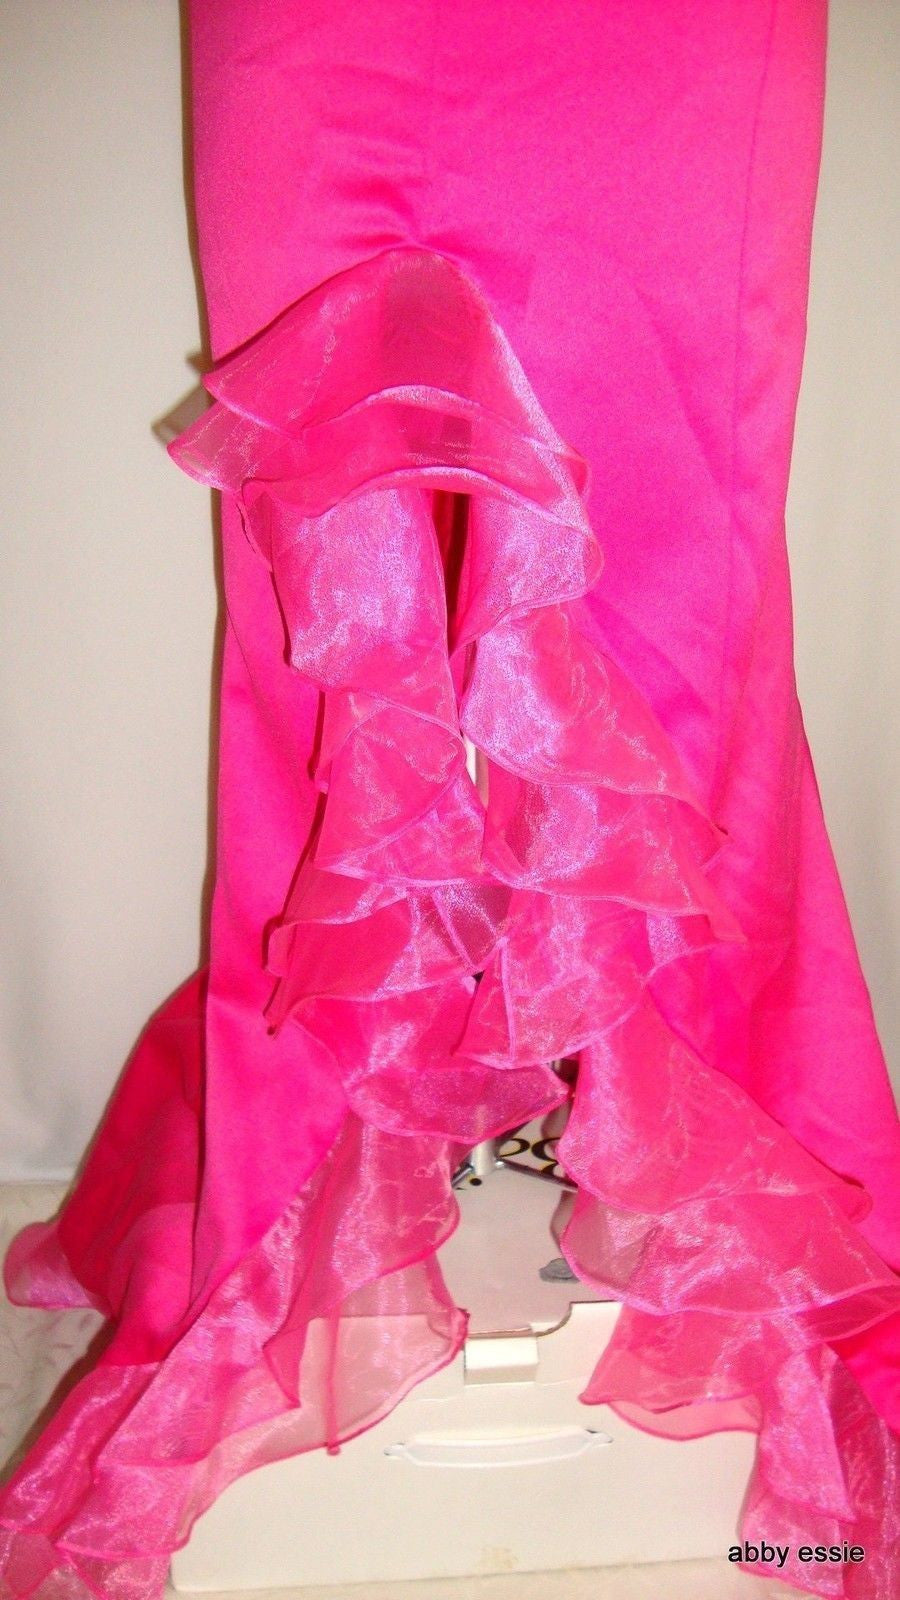 FAVIANA Fuschia Hot Pink Satin Bustier Chiffon Ruffle Formal Pageant Abby Essie